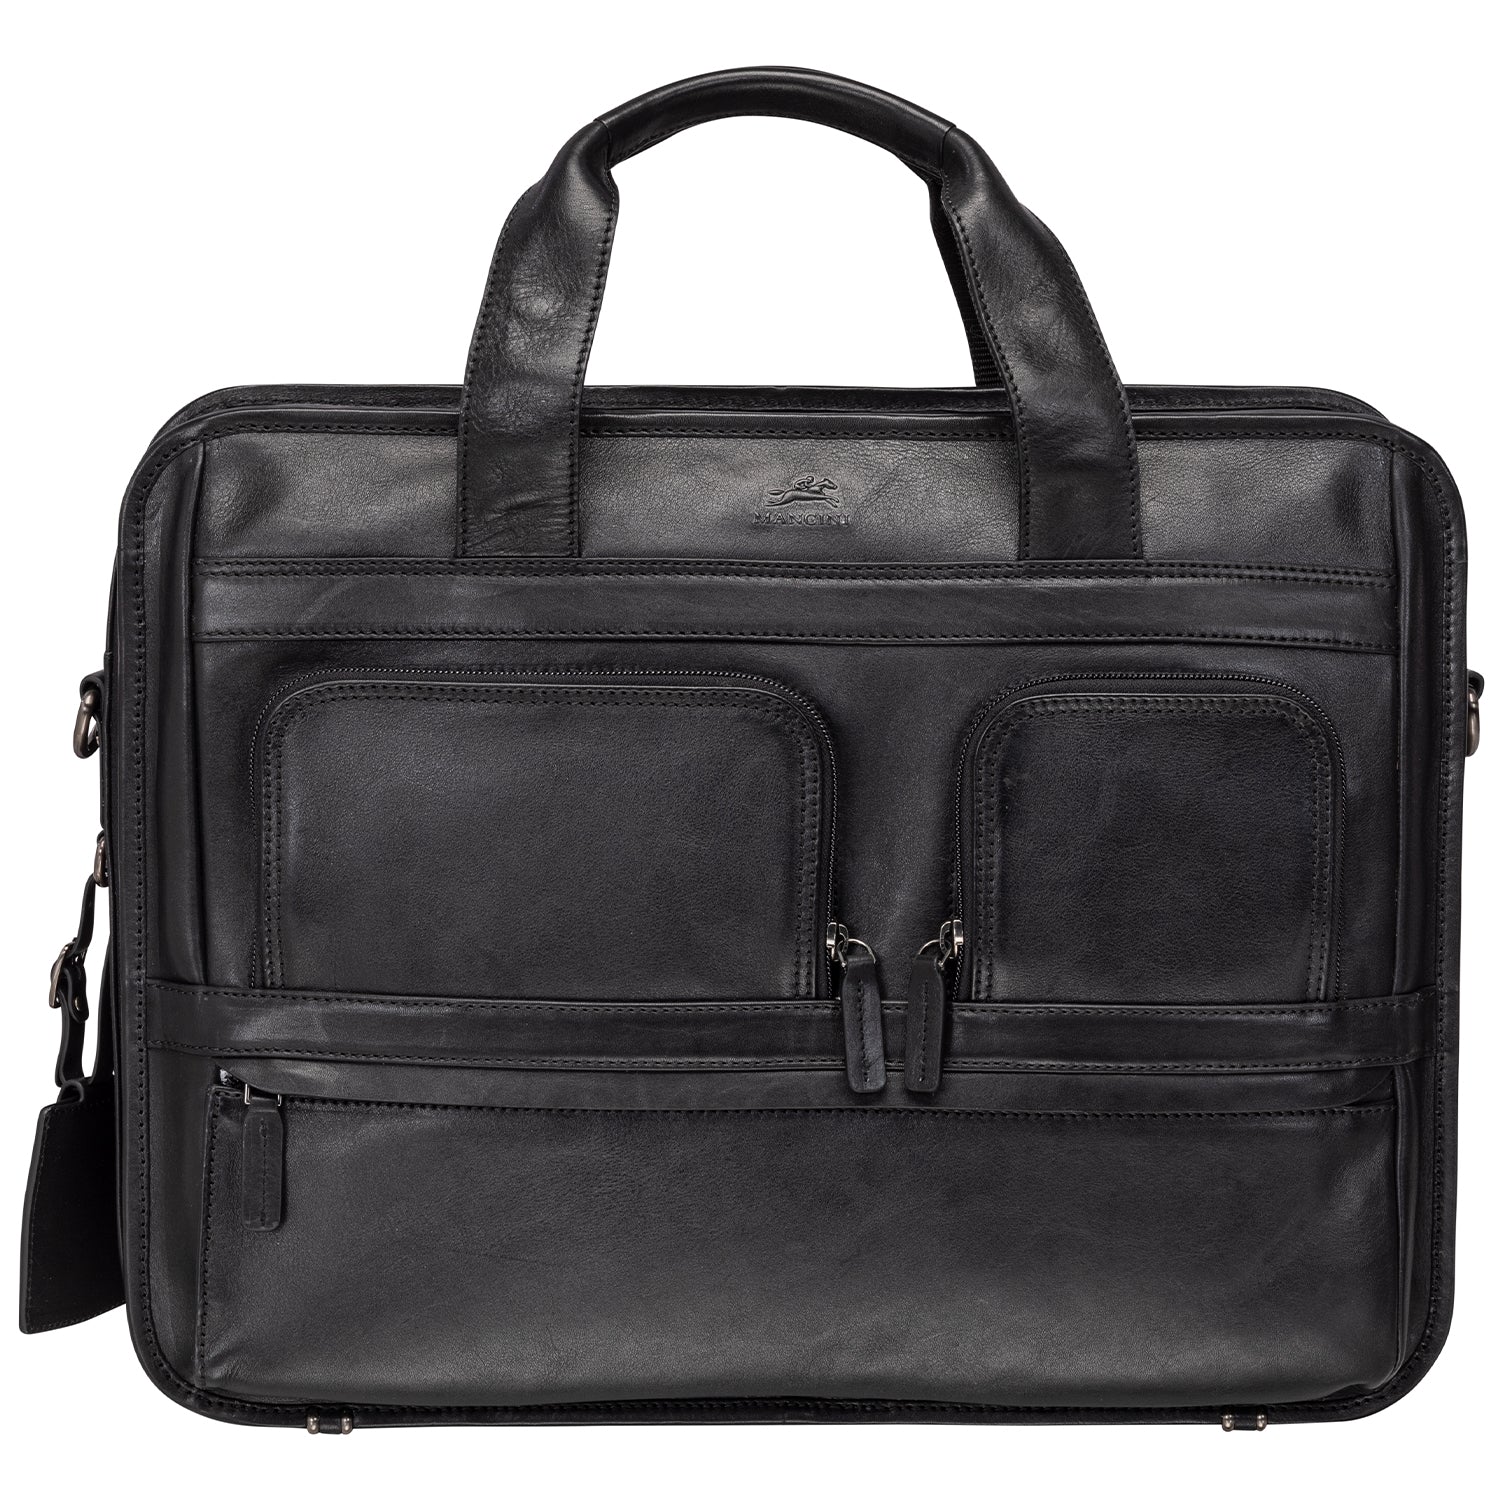 Mancini MILAN Double Compartment Top Zipper 15.6” Laptop / Tablet Briefcase - Black